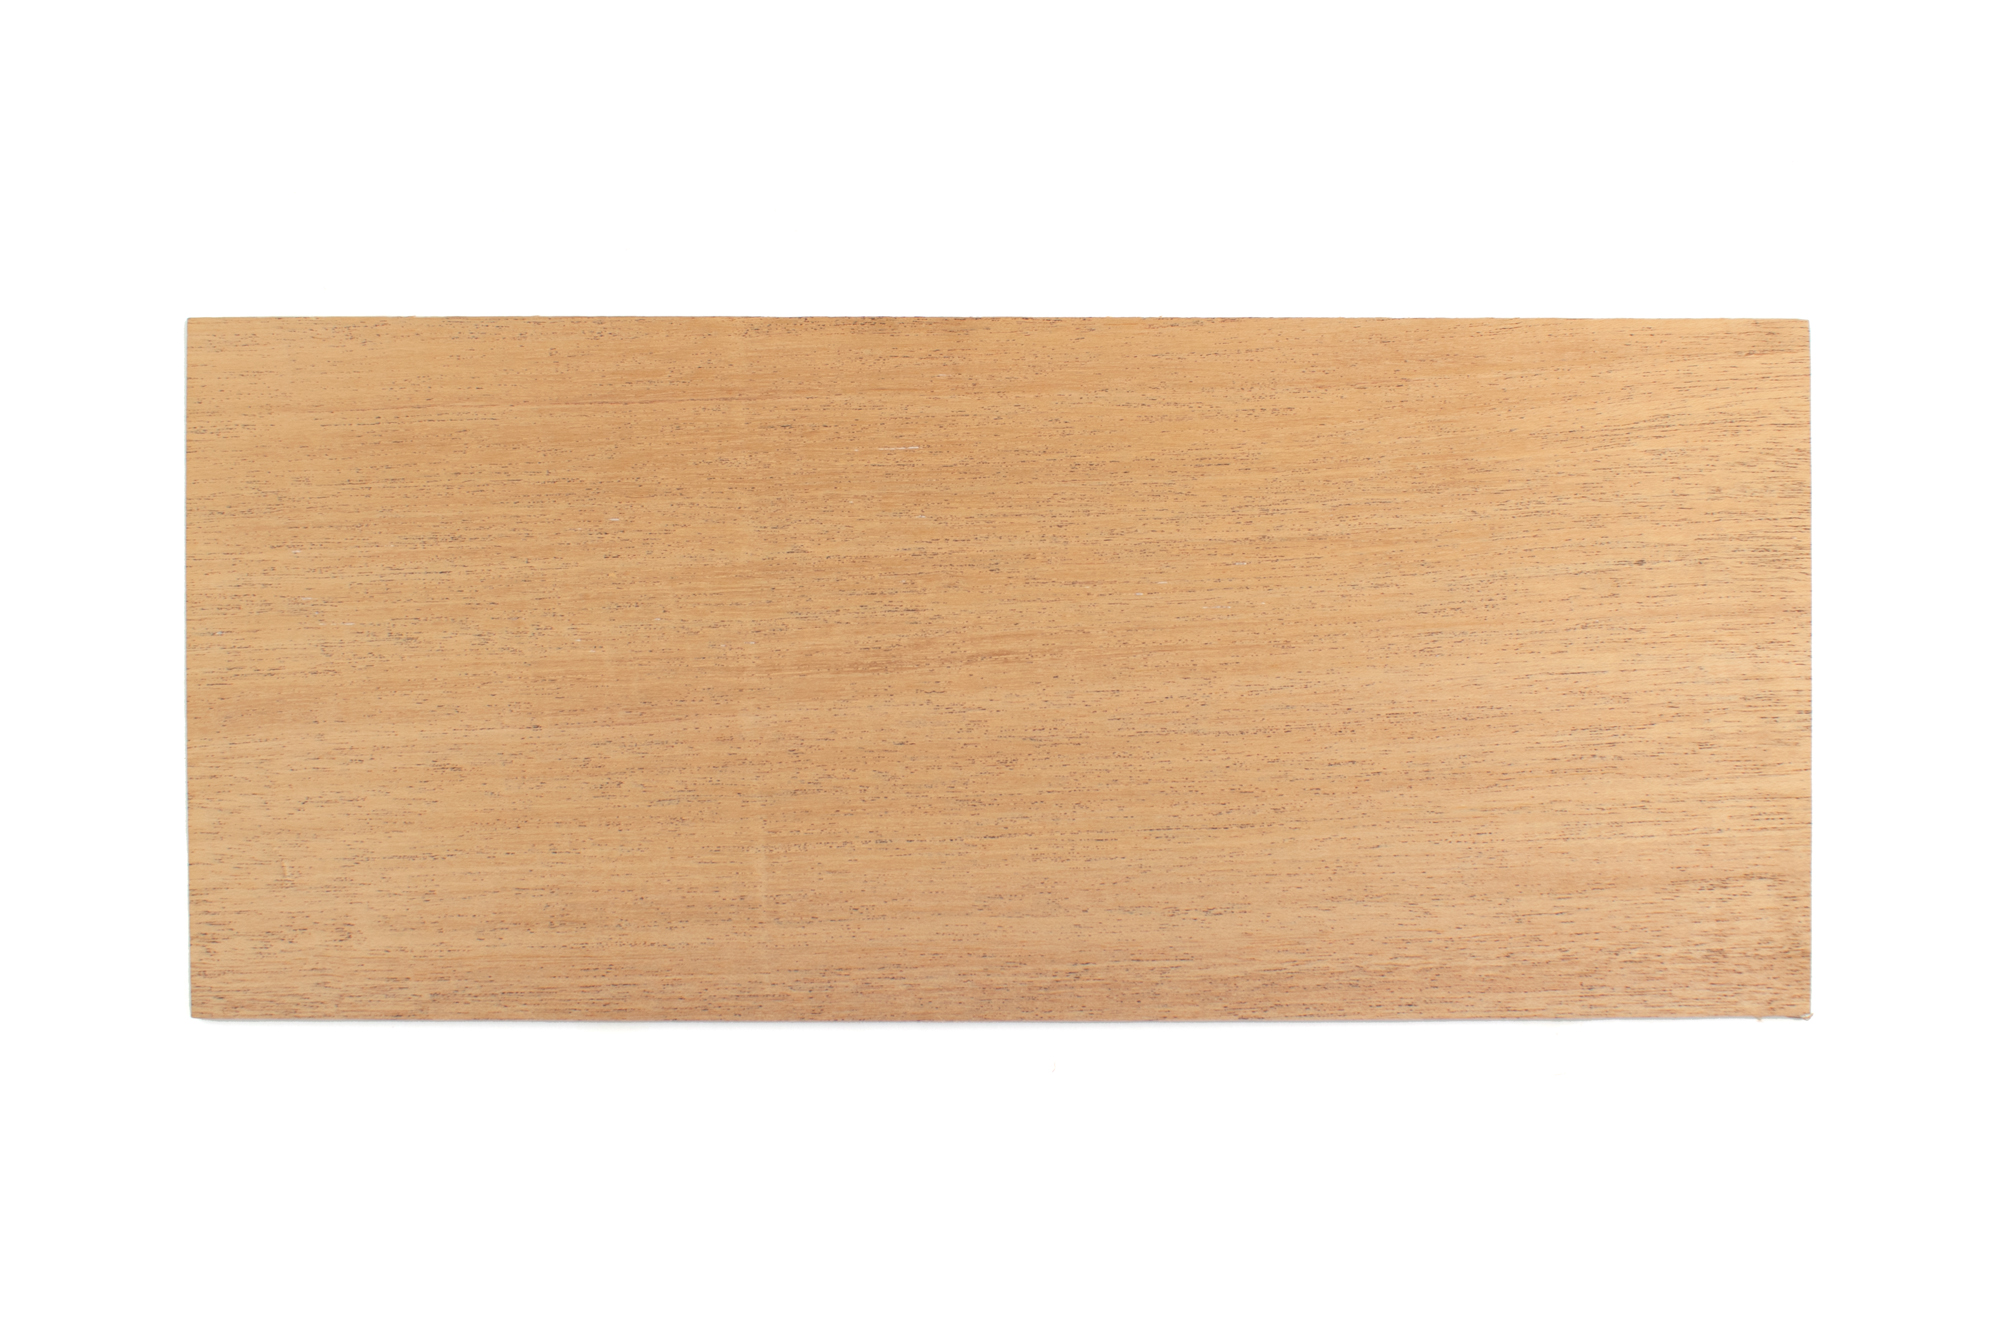 Mahogany Wood craft board 1/8 inch thick